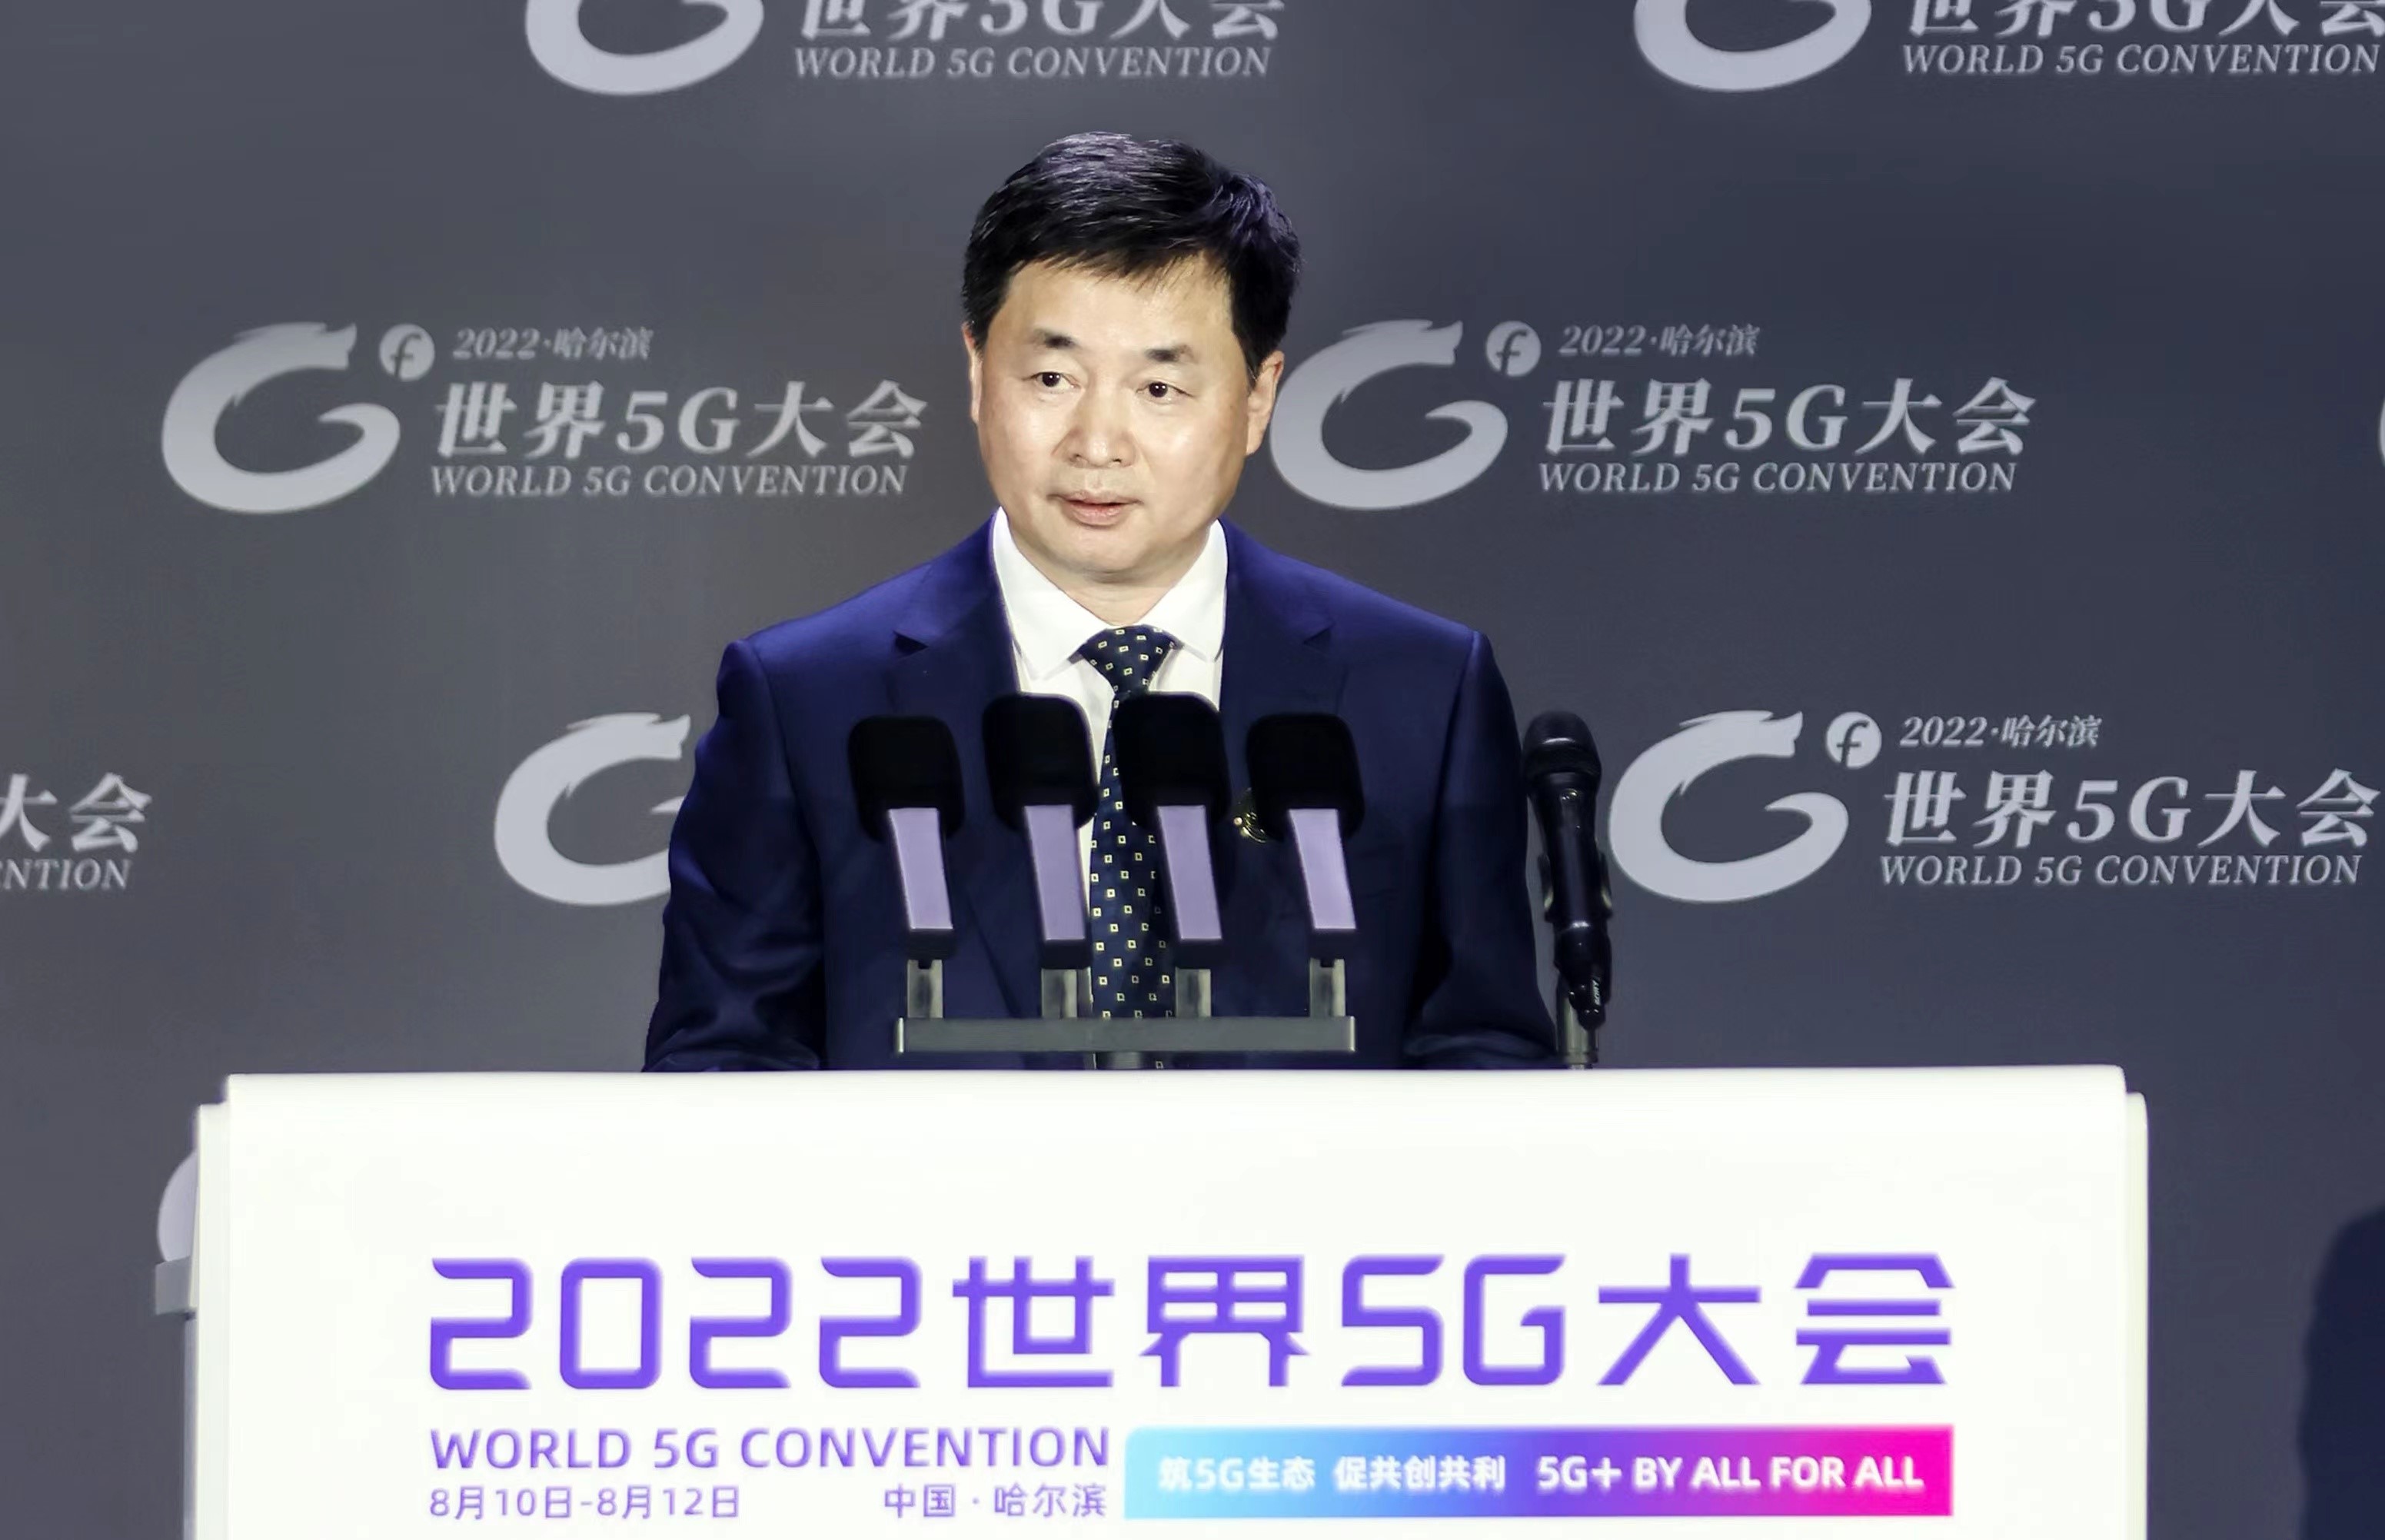 中国电信董事长柯瑞文在世界5G大会发表主题演讲